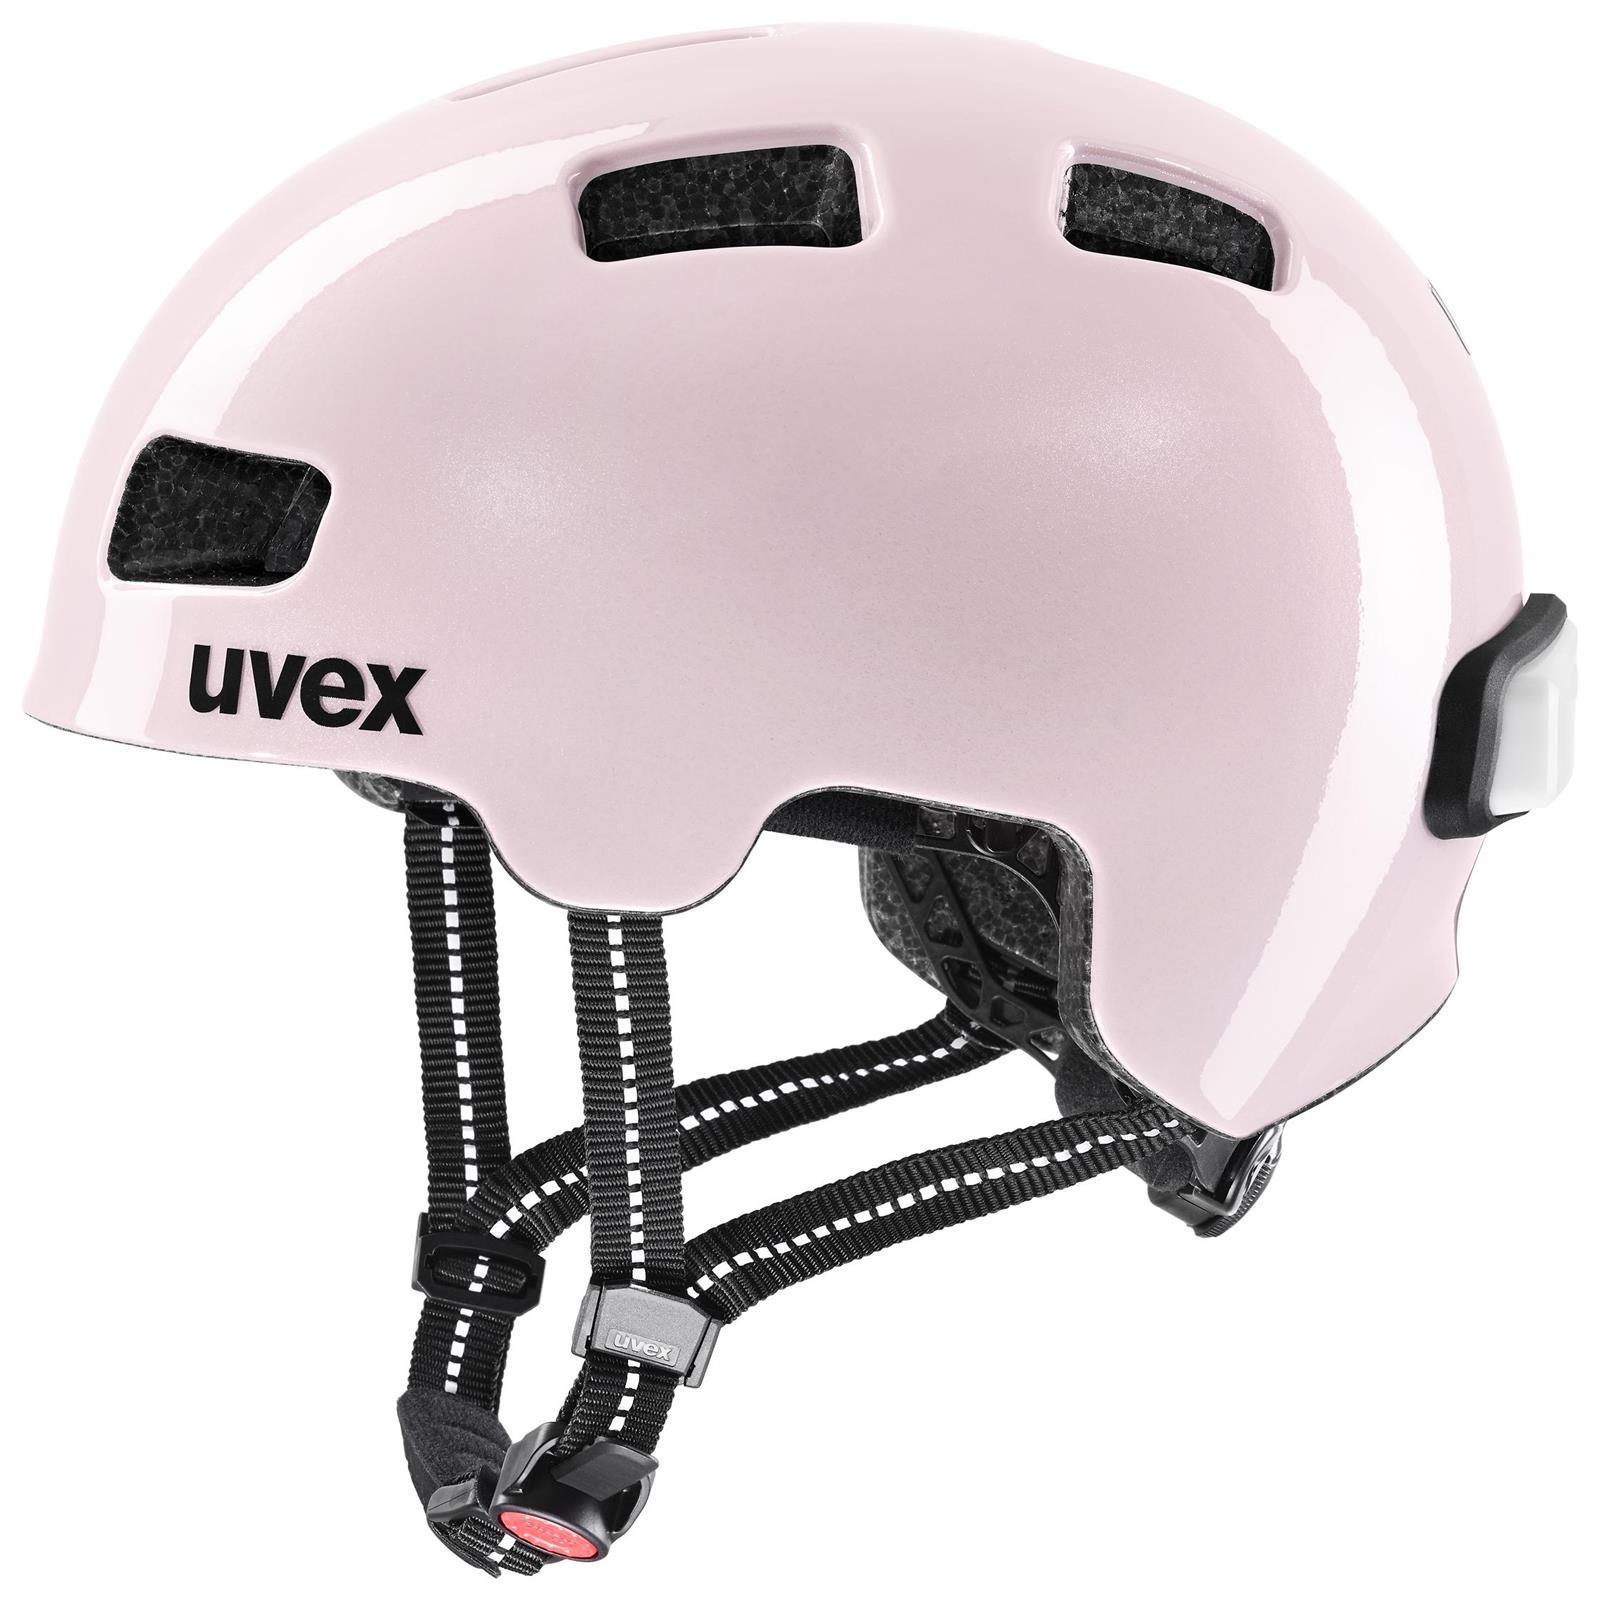 UVEX Hlmt 4 Reflexx Powder (s4100790200)